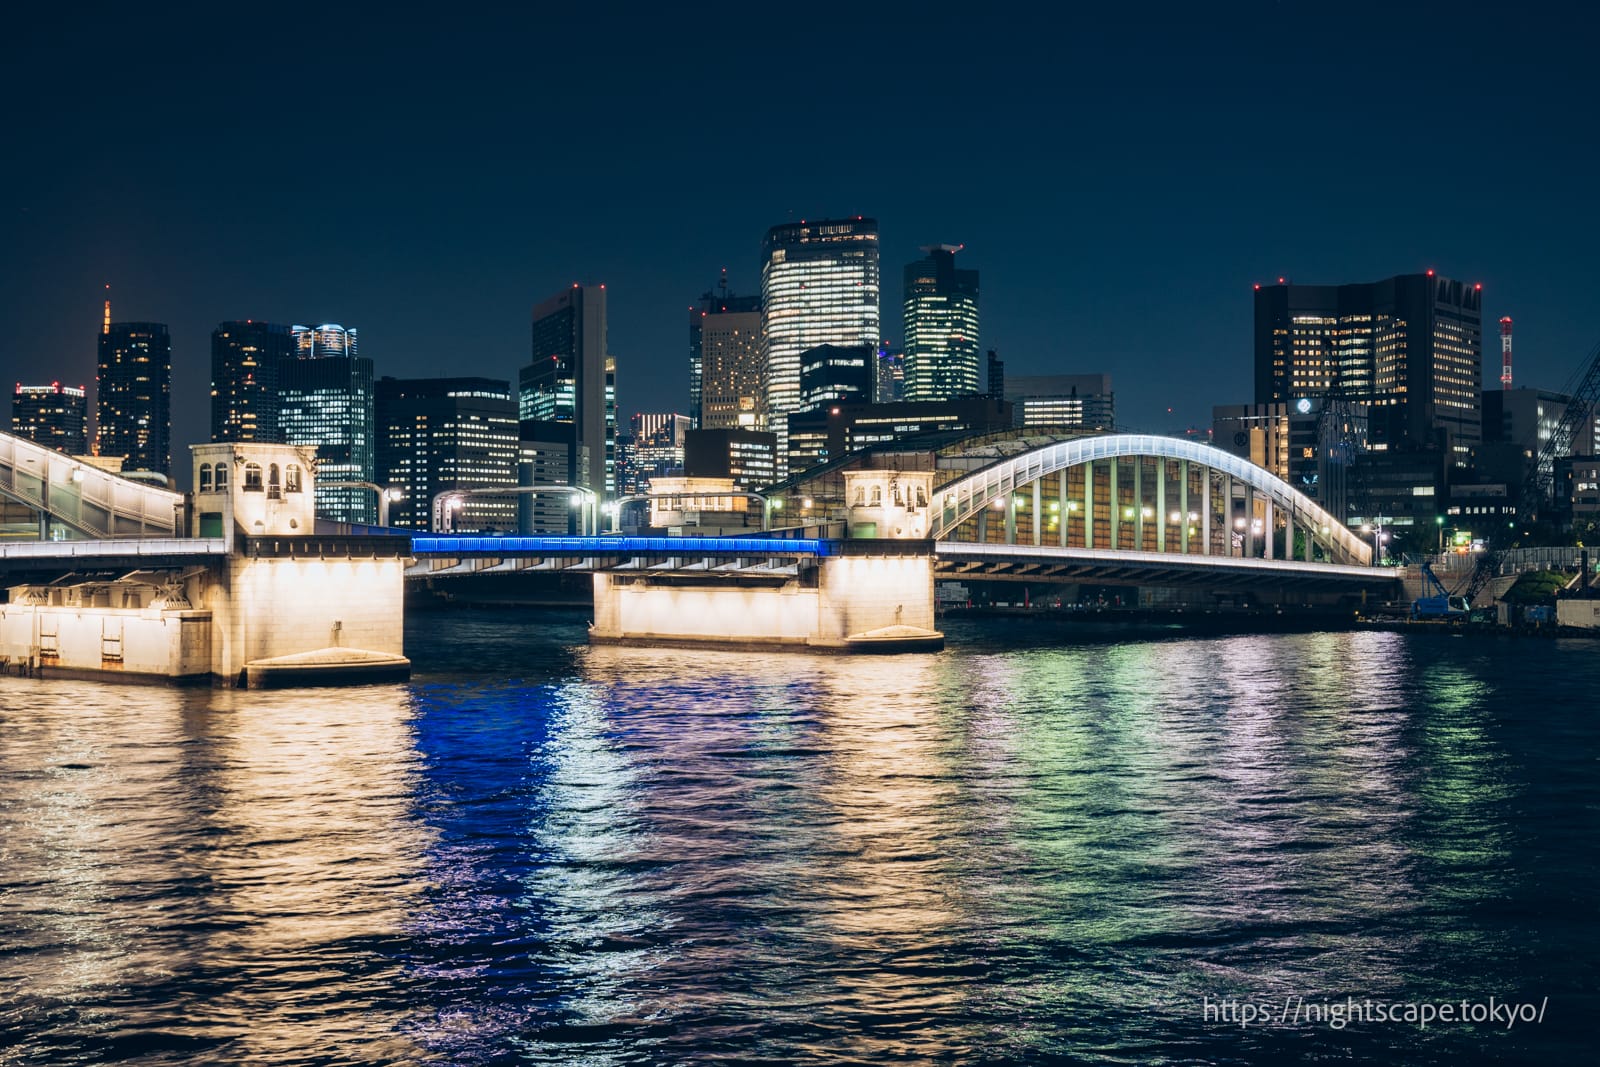 Kachidoki Bridge illuminated.